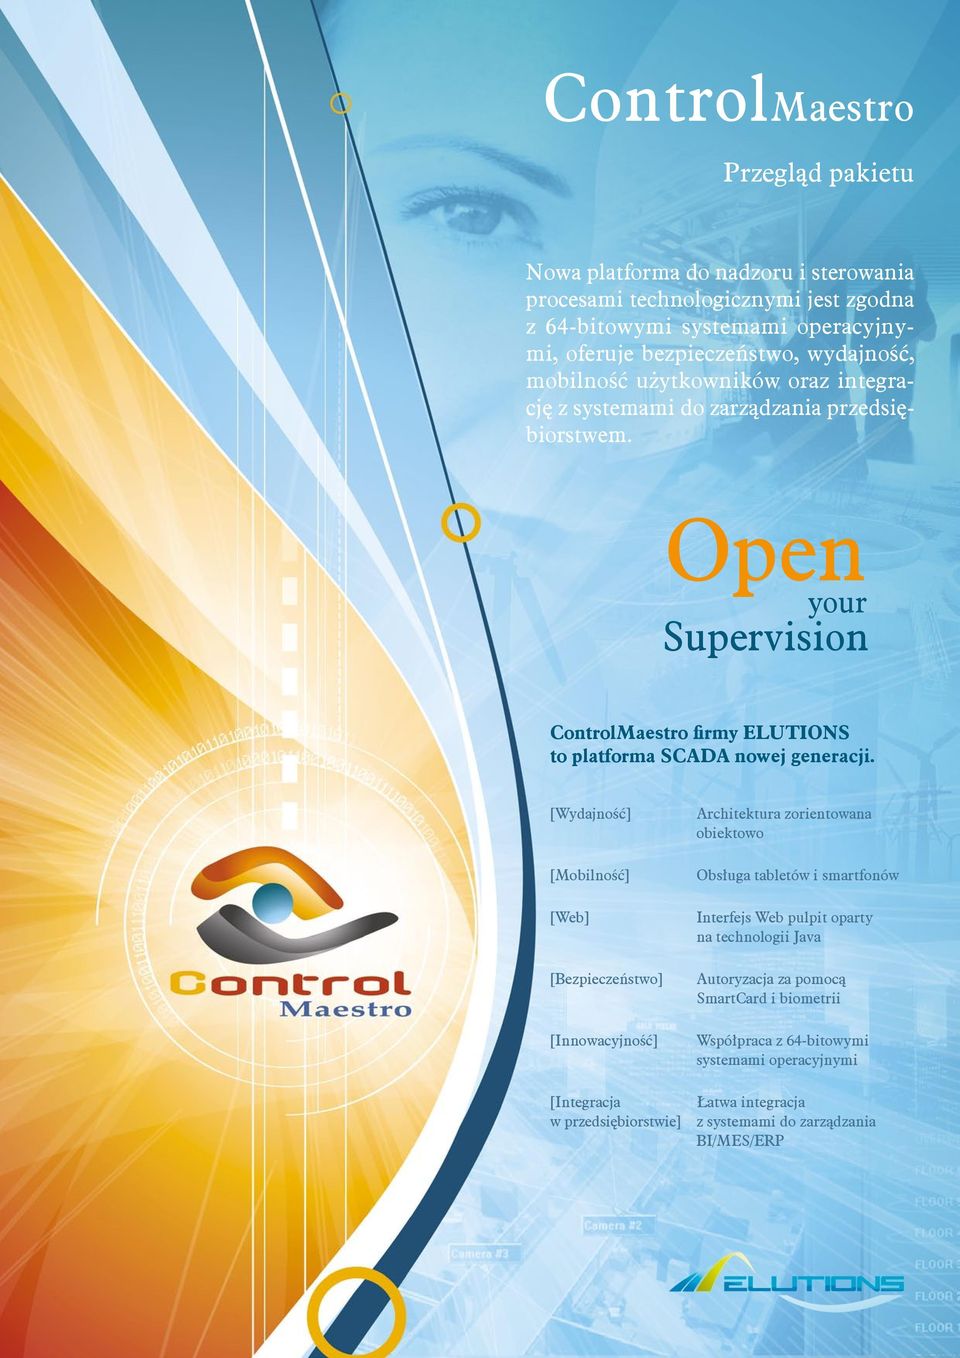 Open your Supervision ControlMaestro firmy ELUTIONS to platforma SCADA nowej generacji.